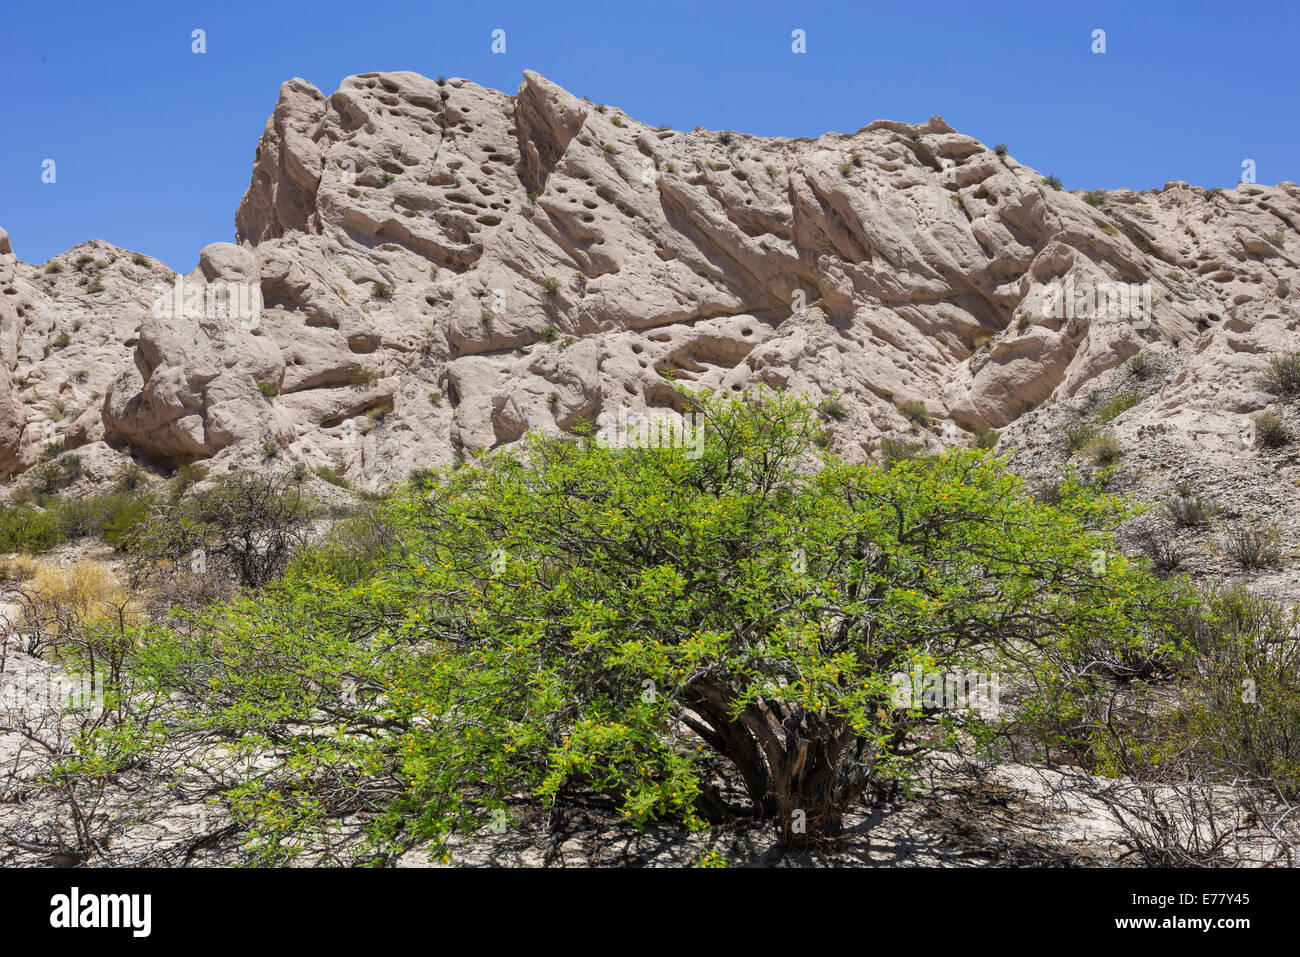 Arbusto di acacia e formazioni geologiche di un dry lake bed nel monumento naturale, angastaco salta argentina Foto Stock